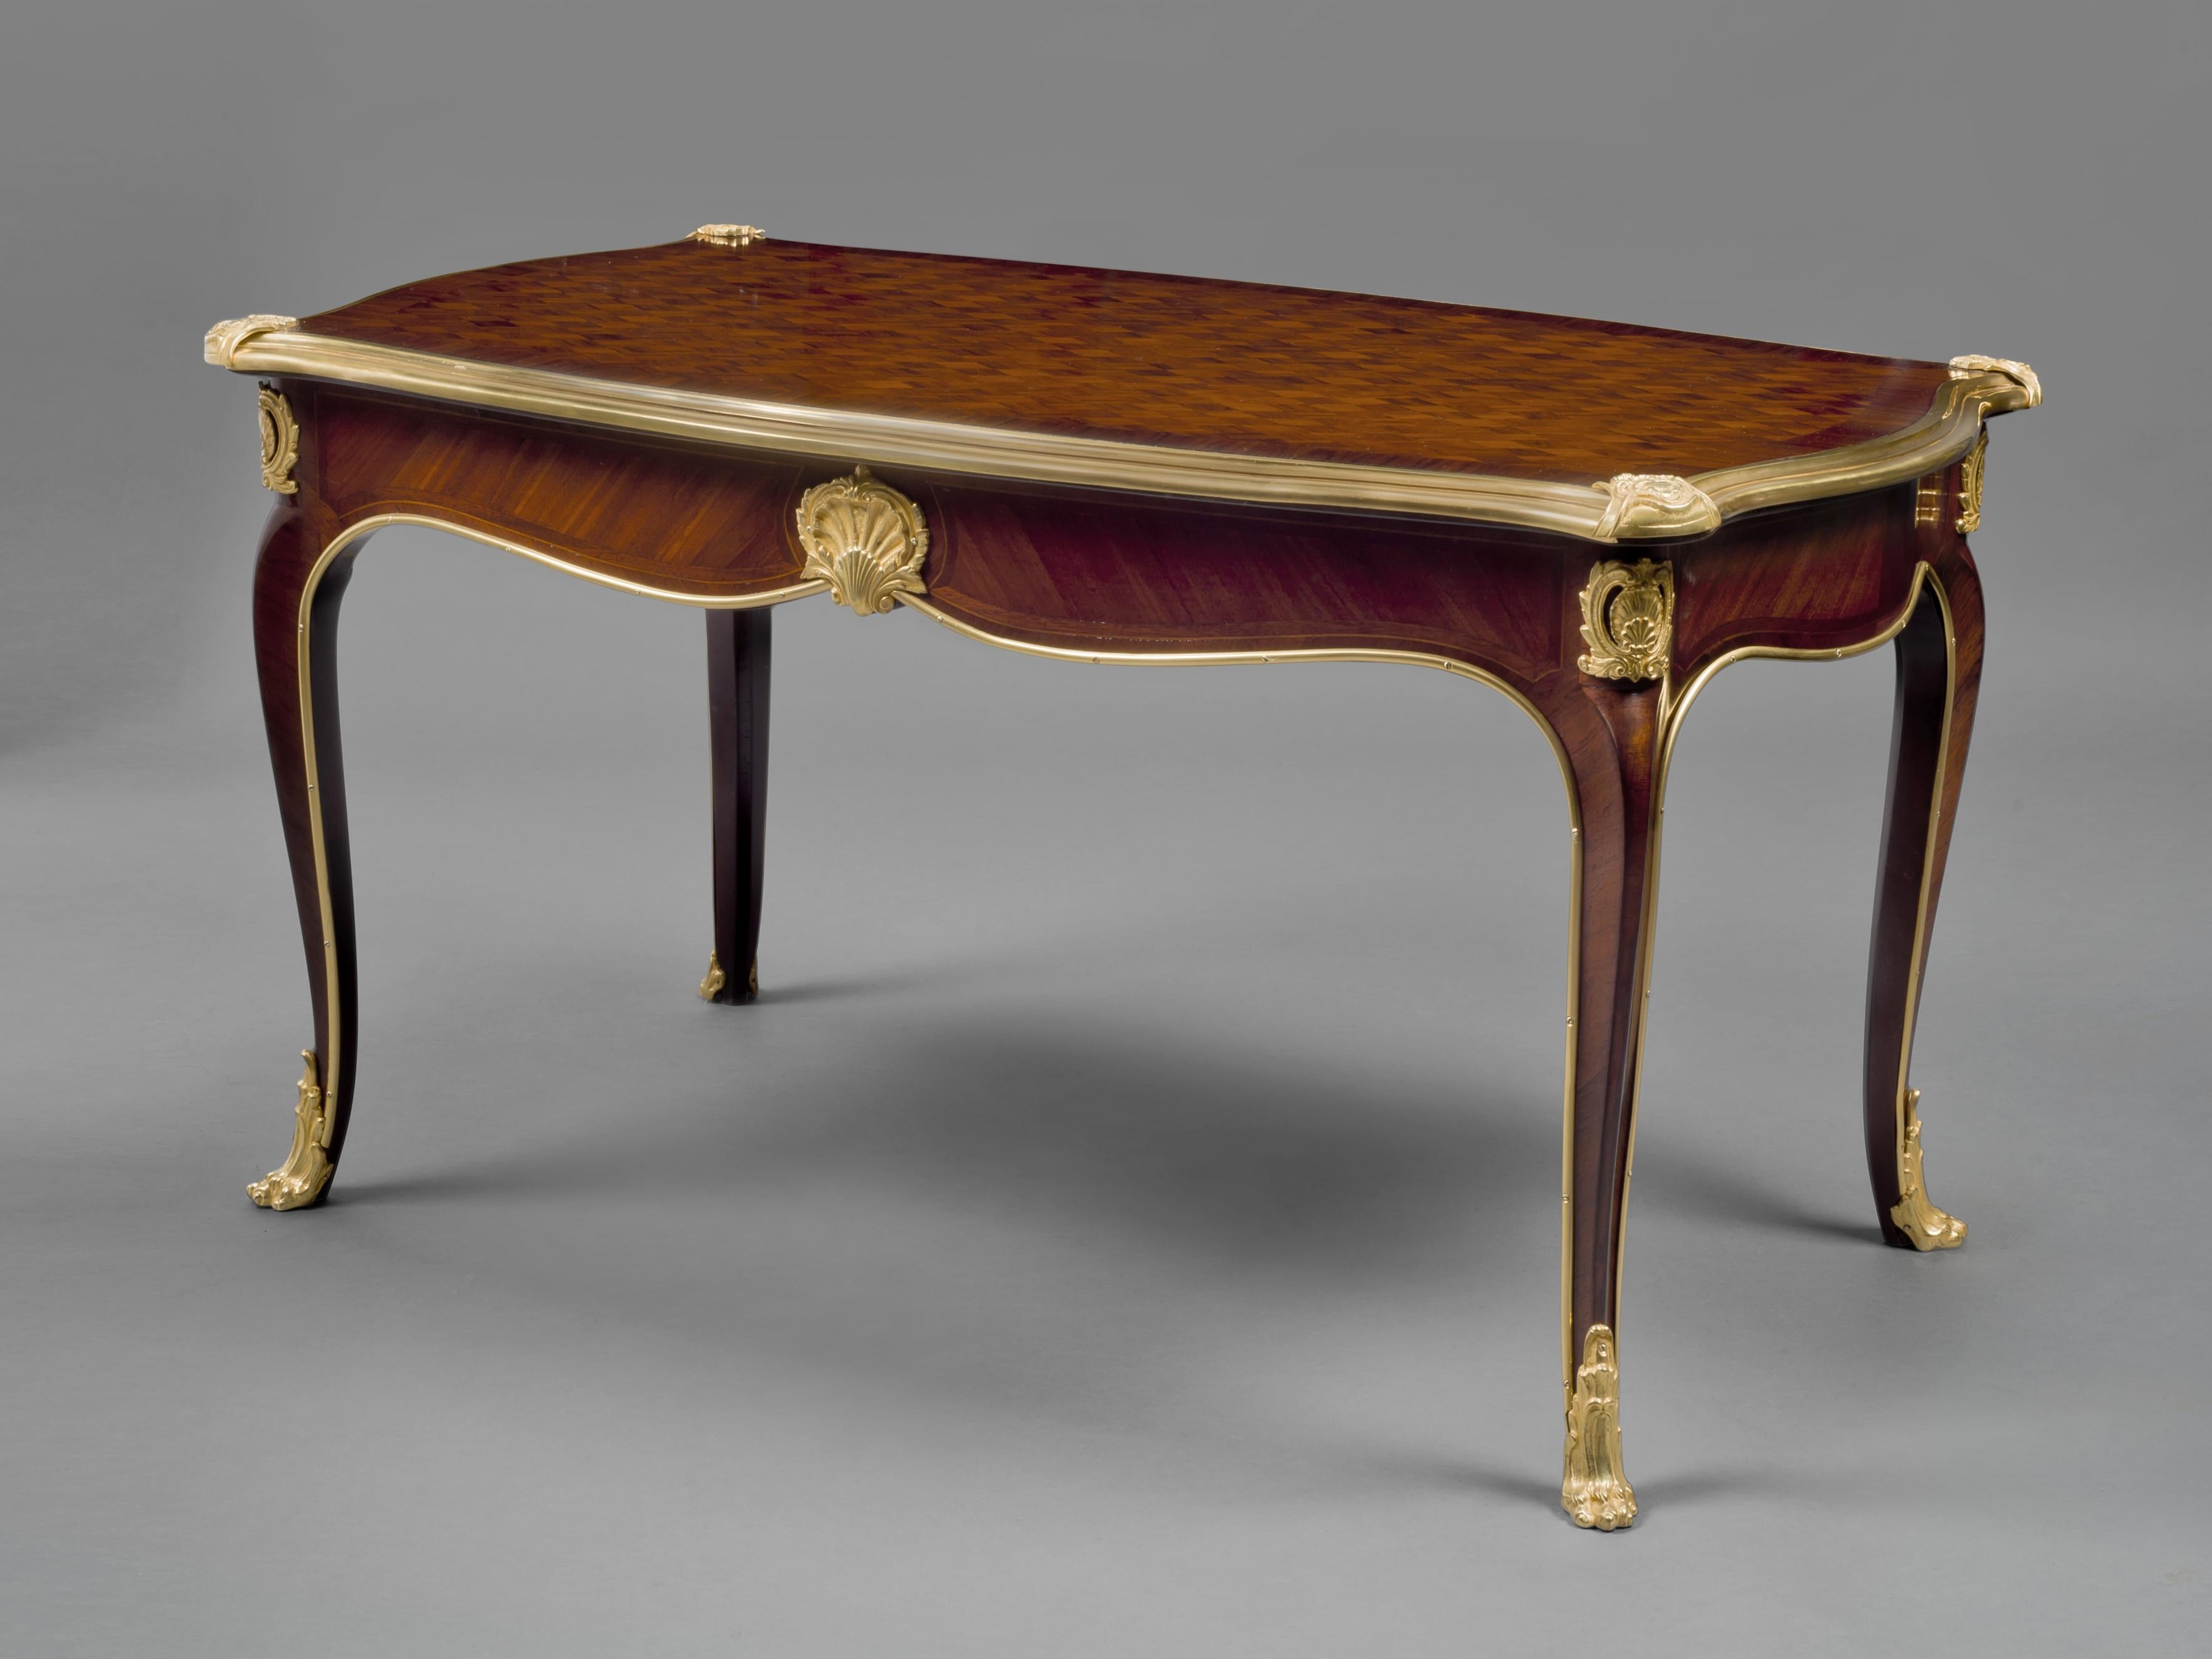 Une table basse de style Louis XV par Lysberg et Hansen de Copenhague.

Danois, vers 1910.

La société de Copenhague Lysberg & Hansen, puis Lysberg, Hansen & Therp A/S, était un important fabricant de meubles danois et une entreprise de